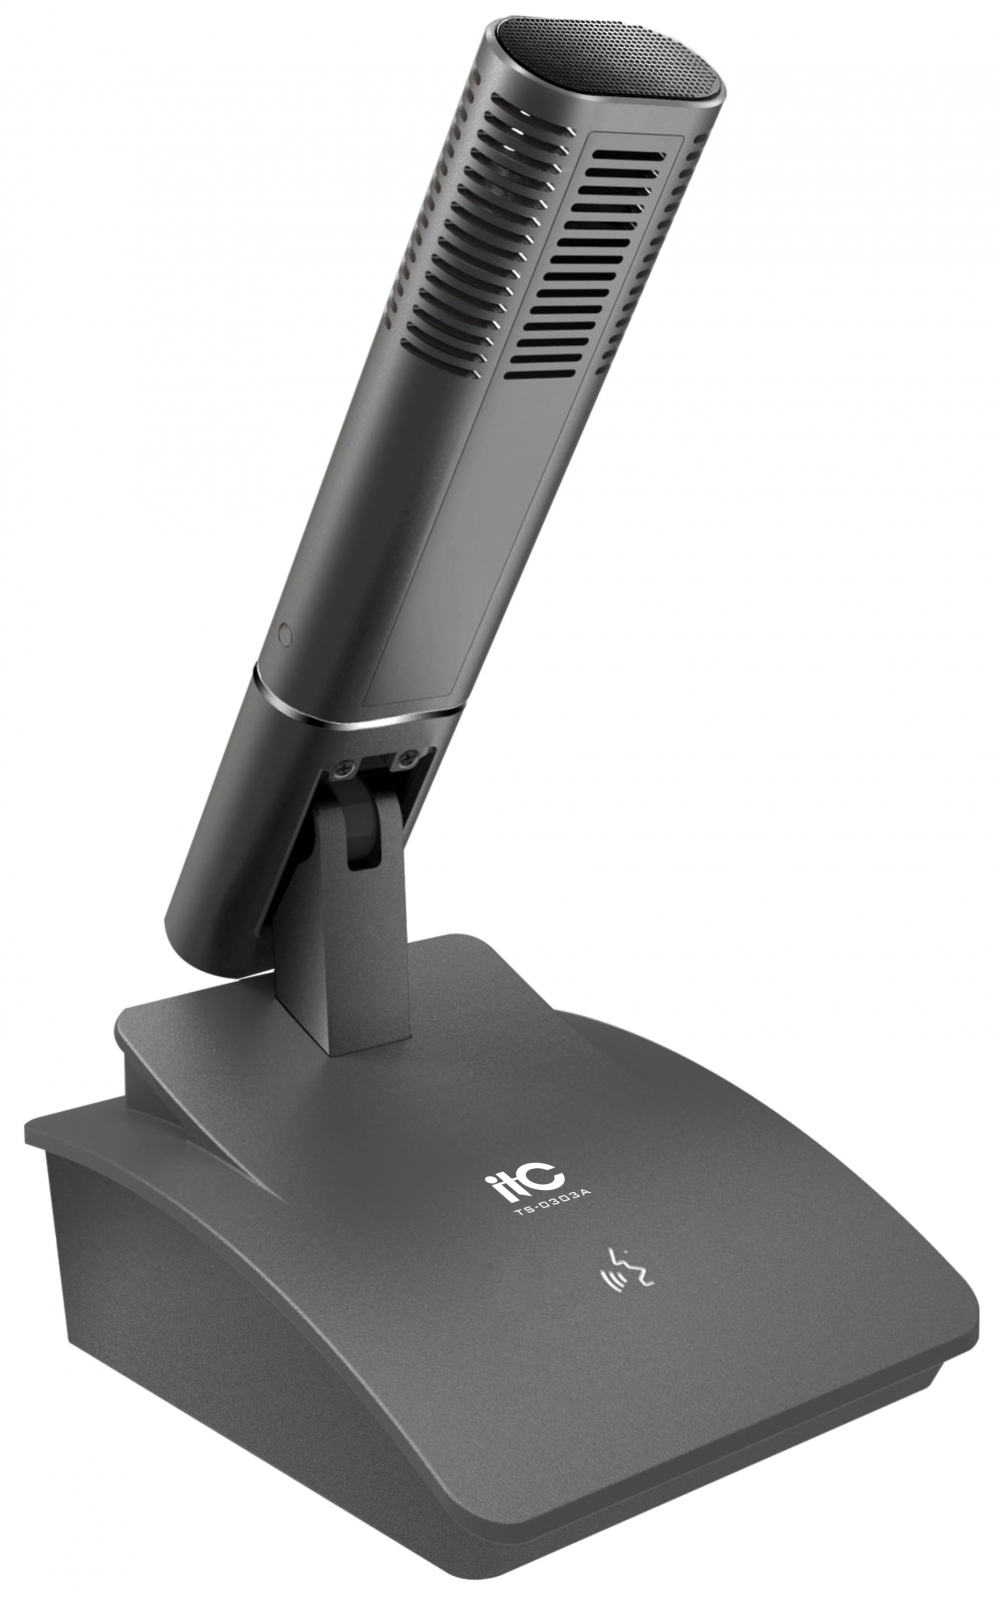 ITC TS-0303A микрофон делегата, серый цвет